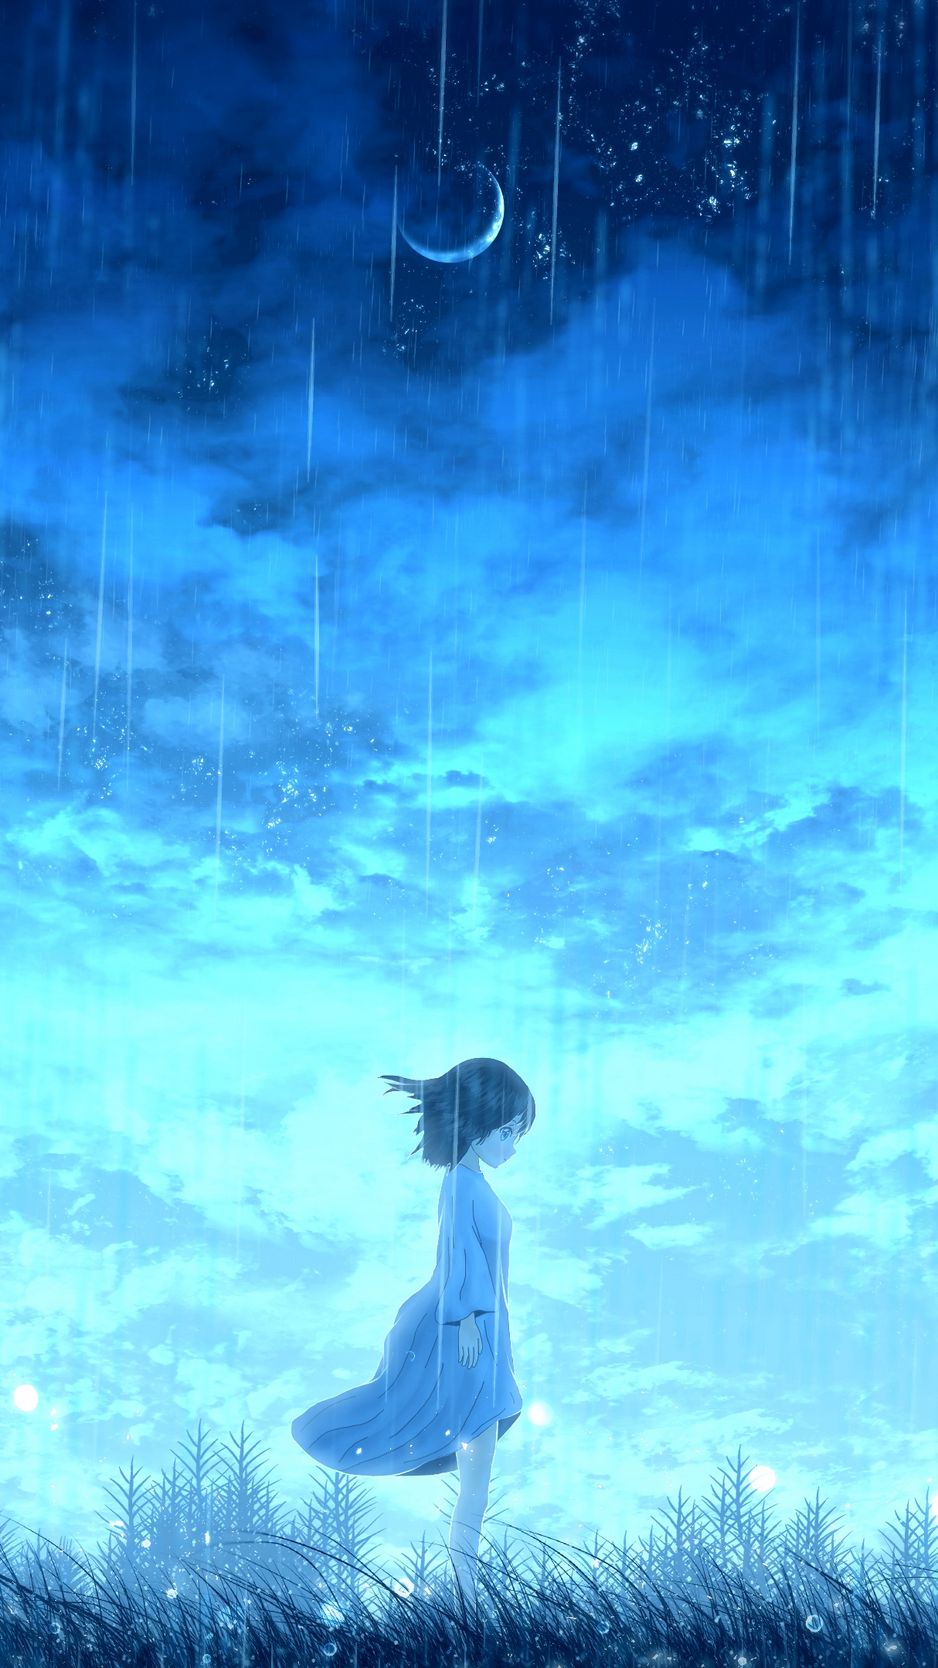 Mobile wallpaper: Anime, Rain, Light, Umbrella, Original, 851391 download  the picture for free.